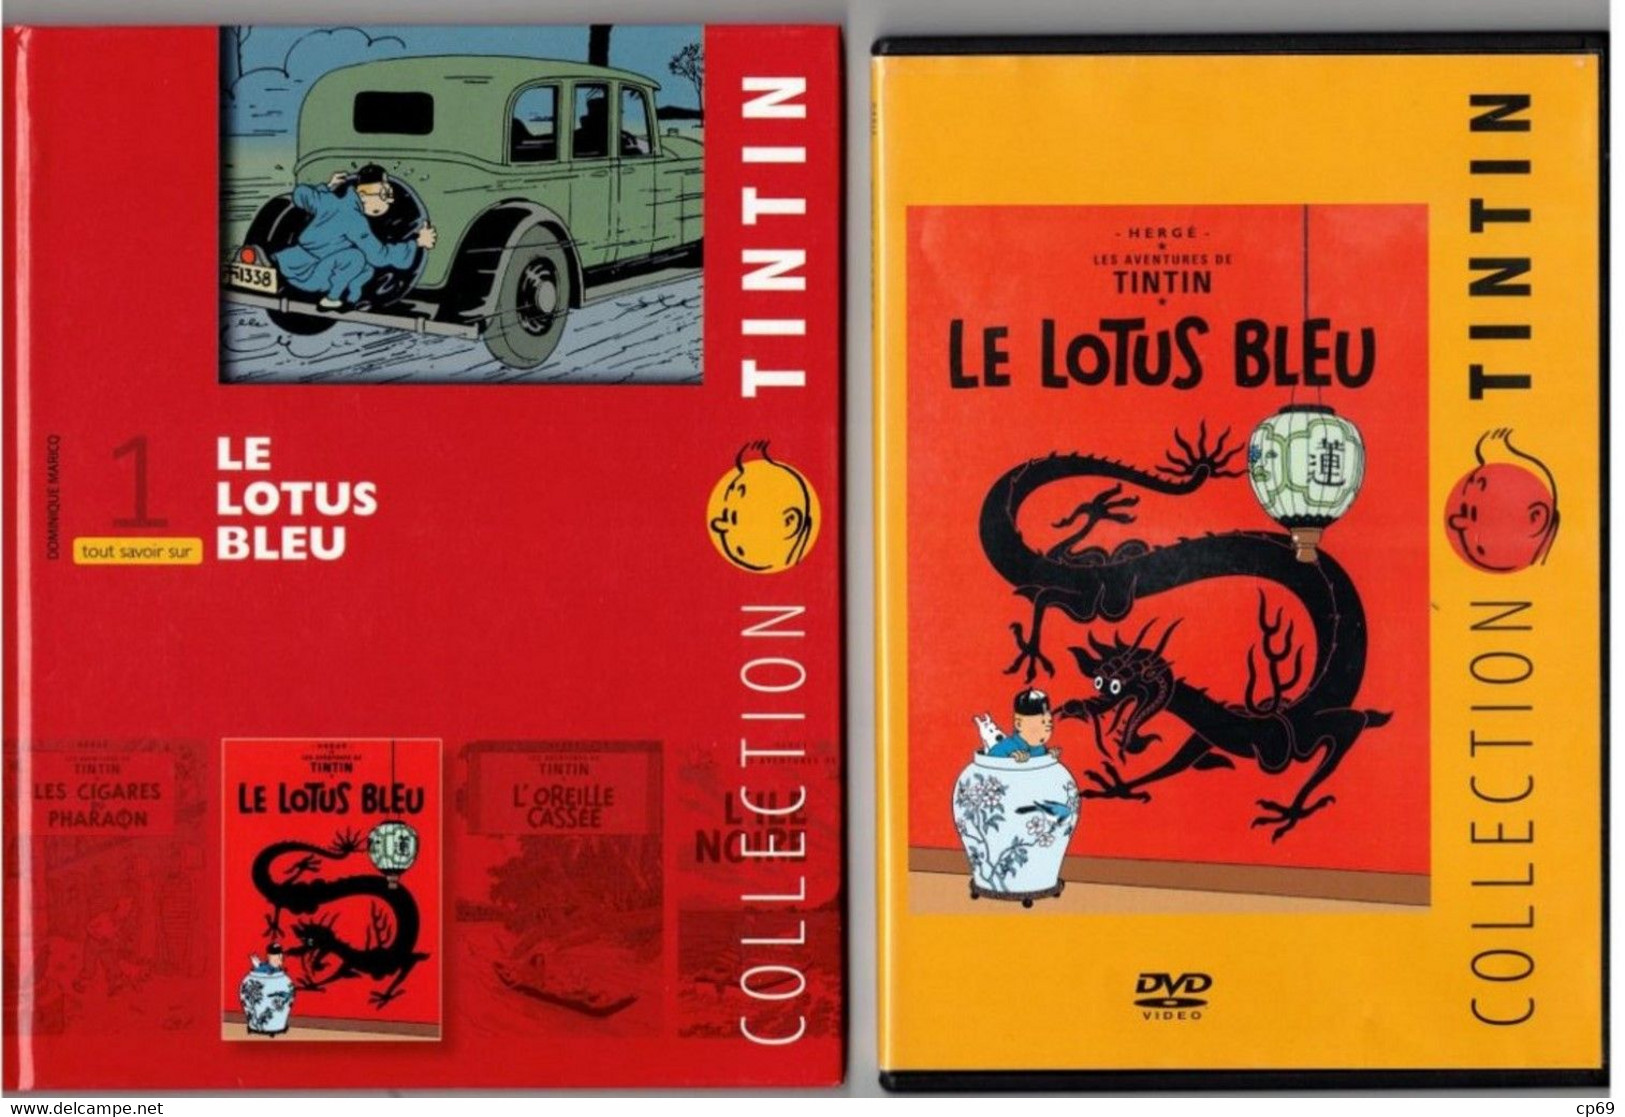 Tintin Hergé / Moulinsart 2010 Milou Chien Dog Cane Le Lotus Bleu N°1 DVD + Livret Explicatif En B.Etat - Dessin Animé